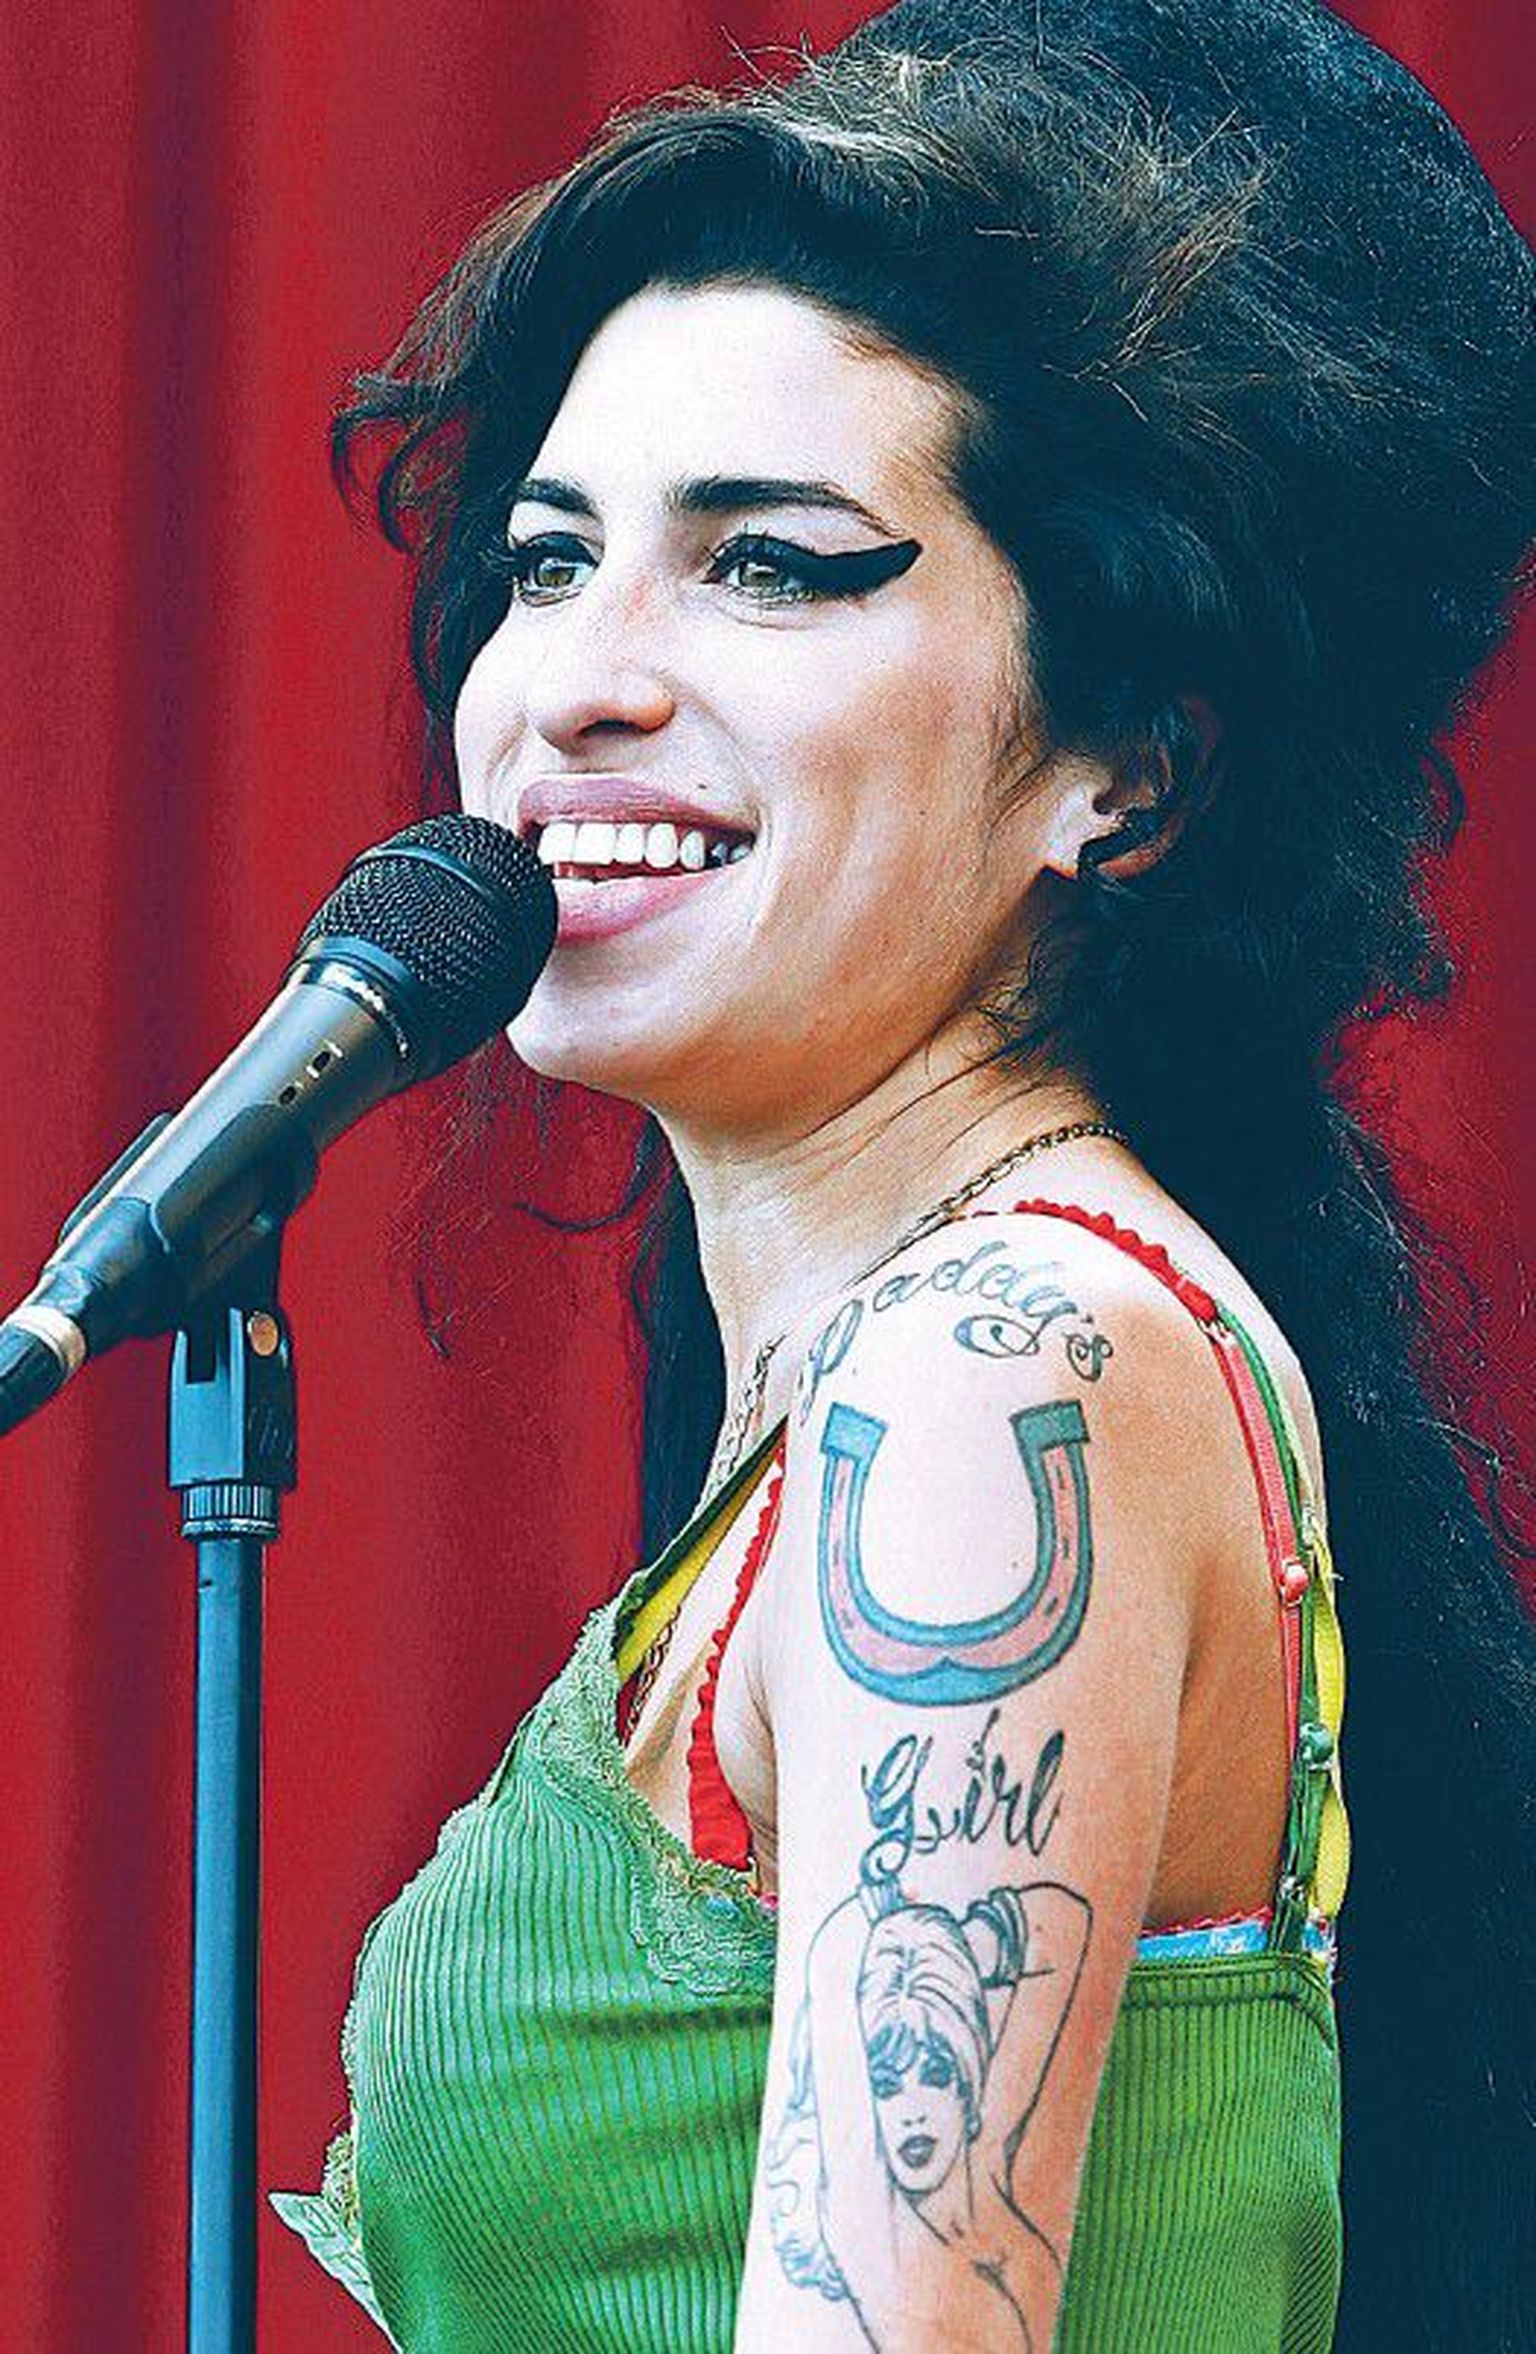 Winehouse kaunistas oma keha ohtrate tätoveeringutega. Vasakul rinnal on taskukujutise kohal sõna «Blake’s», mis viitab eksabikaasale. Pärast lahutust kavatses lauljatar katta selle kujutise mõne suure kaslase pildiga.